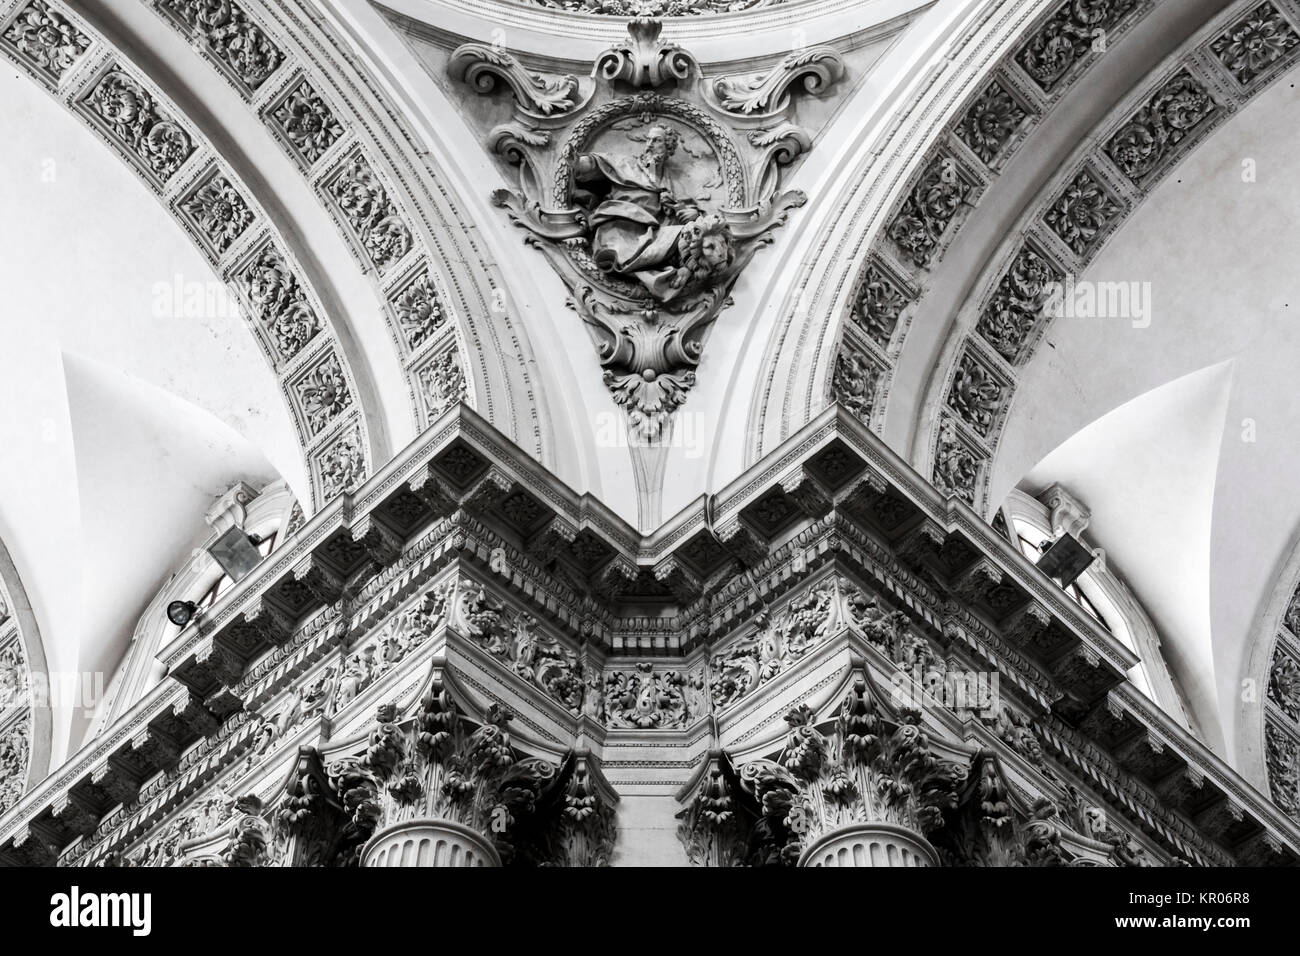 Eine der Zwickeln innerhalb des Duomo Nuovo oder Neue Kathedrale, die größte Römische Katholische Kirche in Brescia, Italien Stockfoto